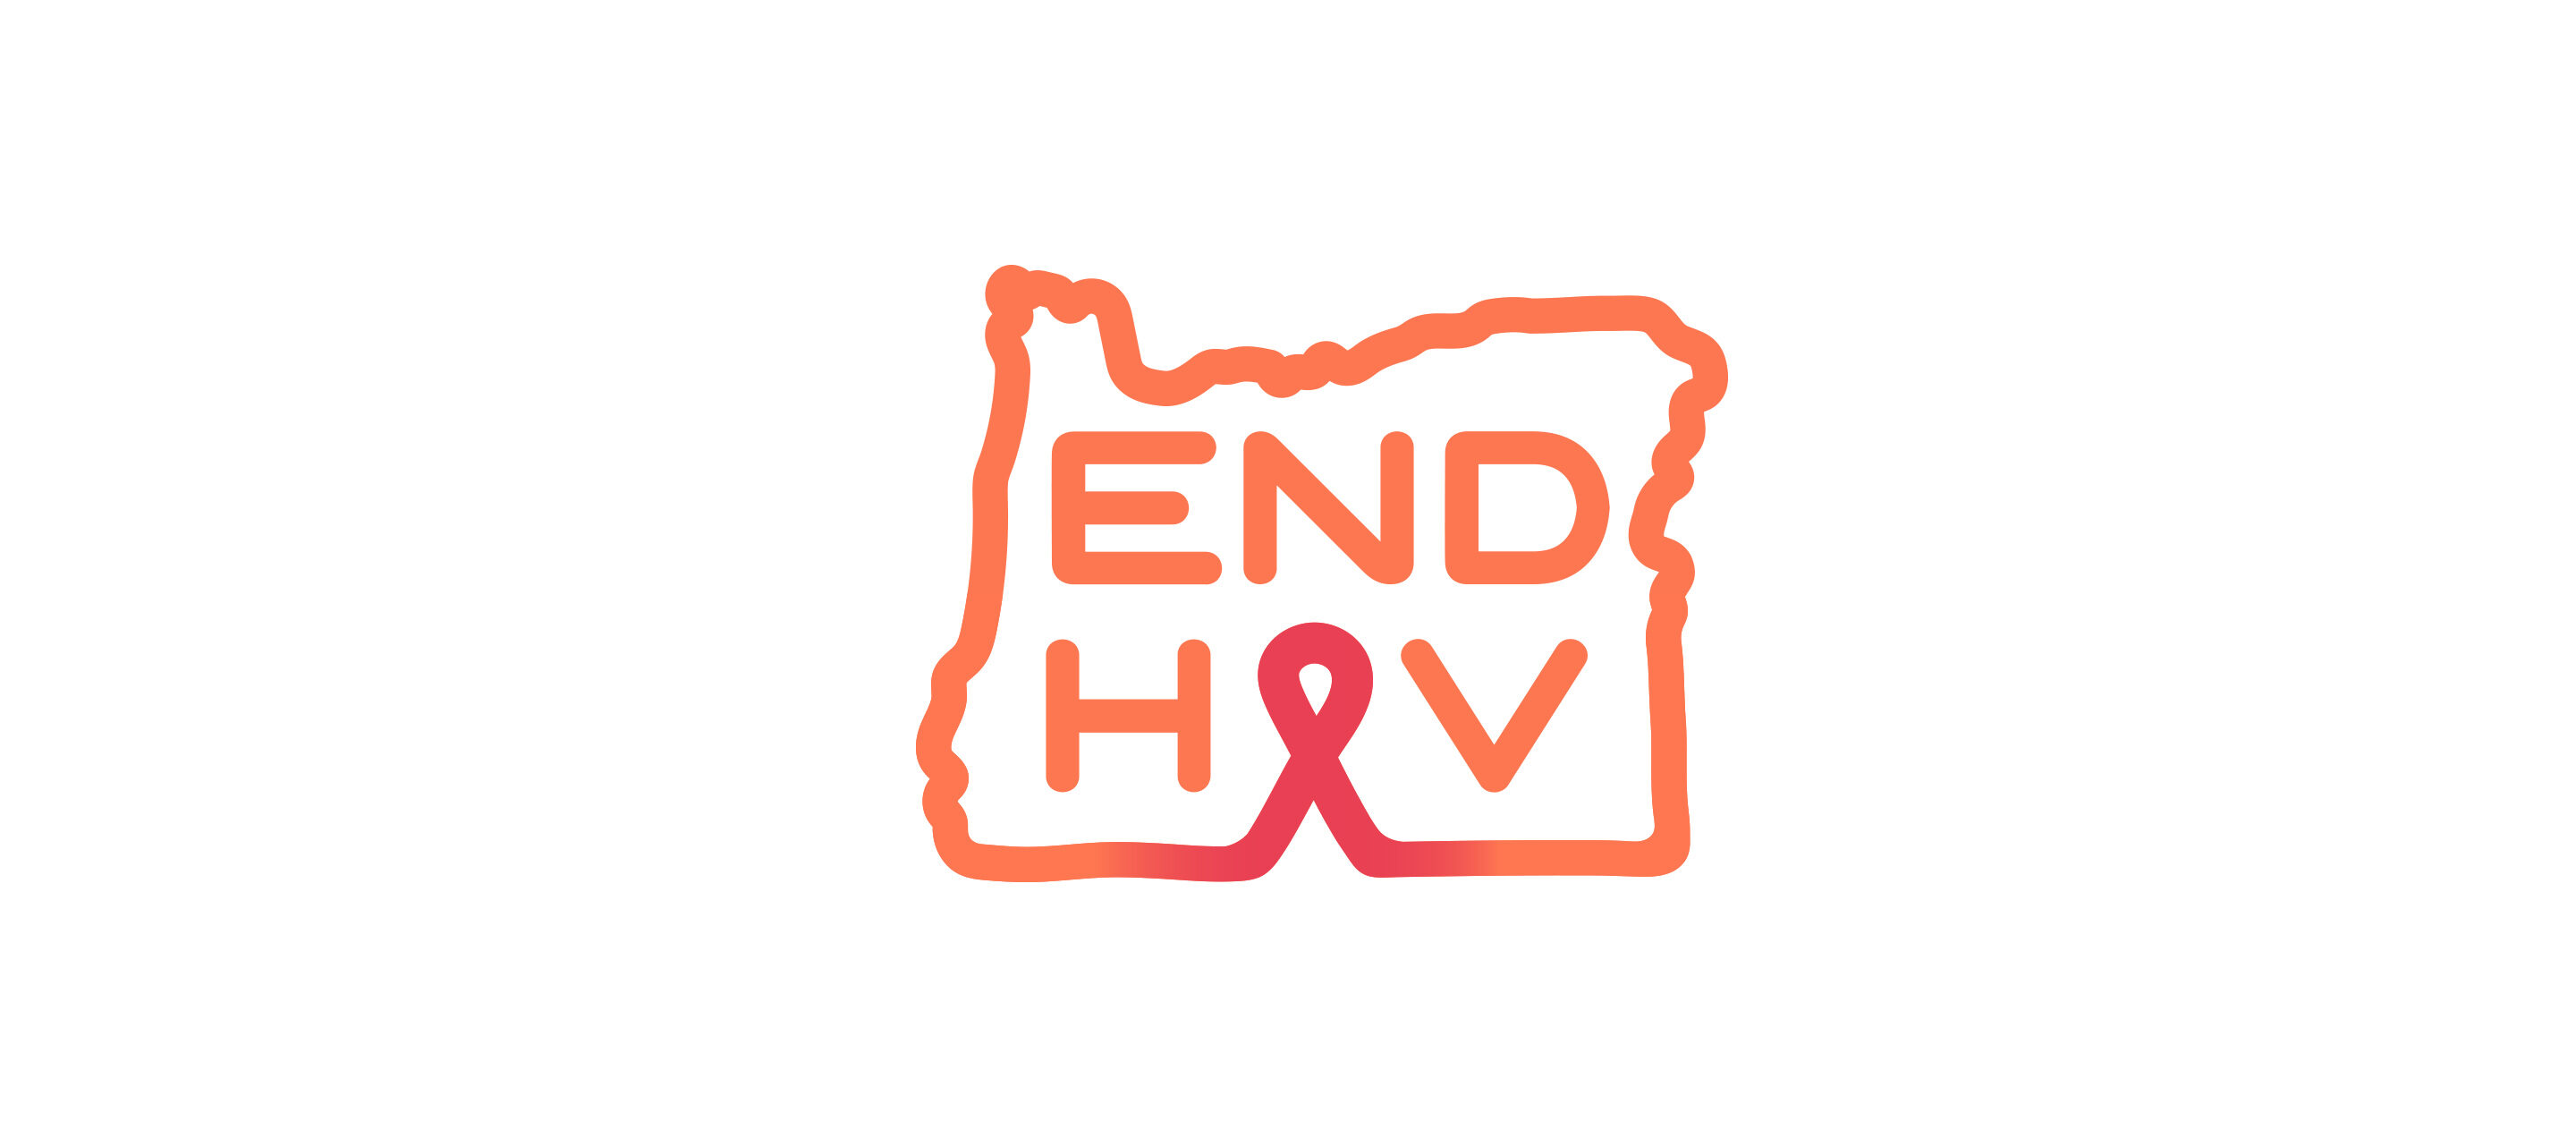 endhiv_logo